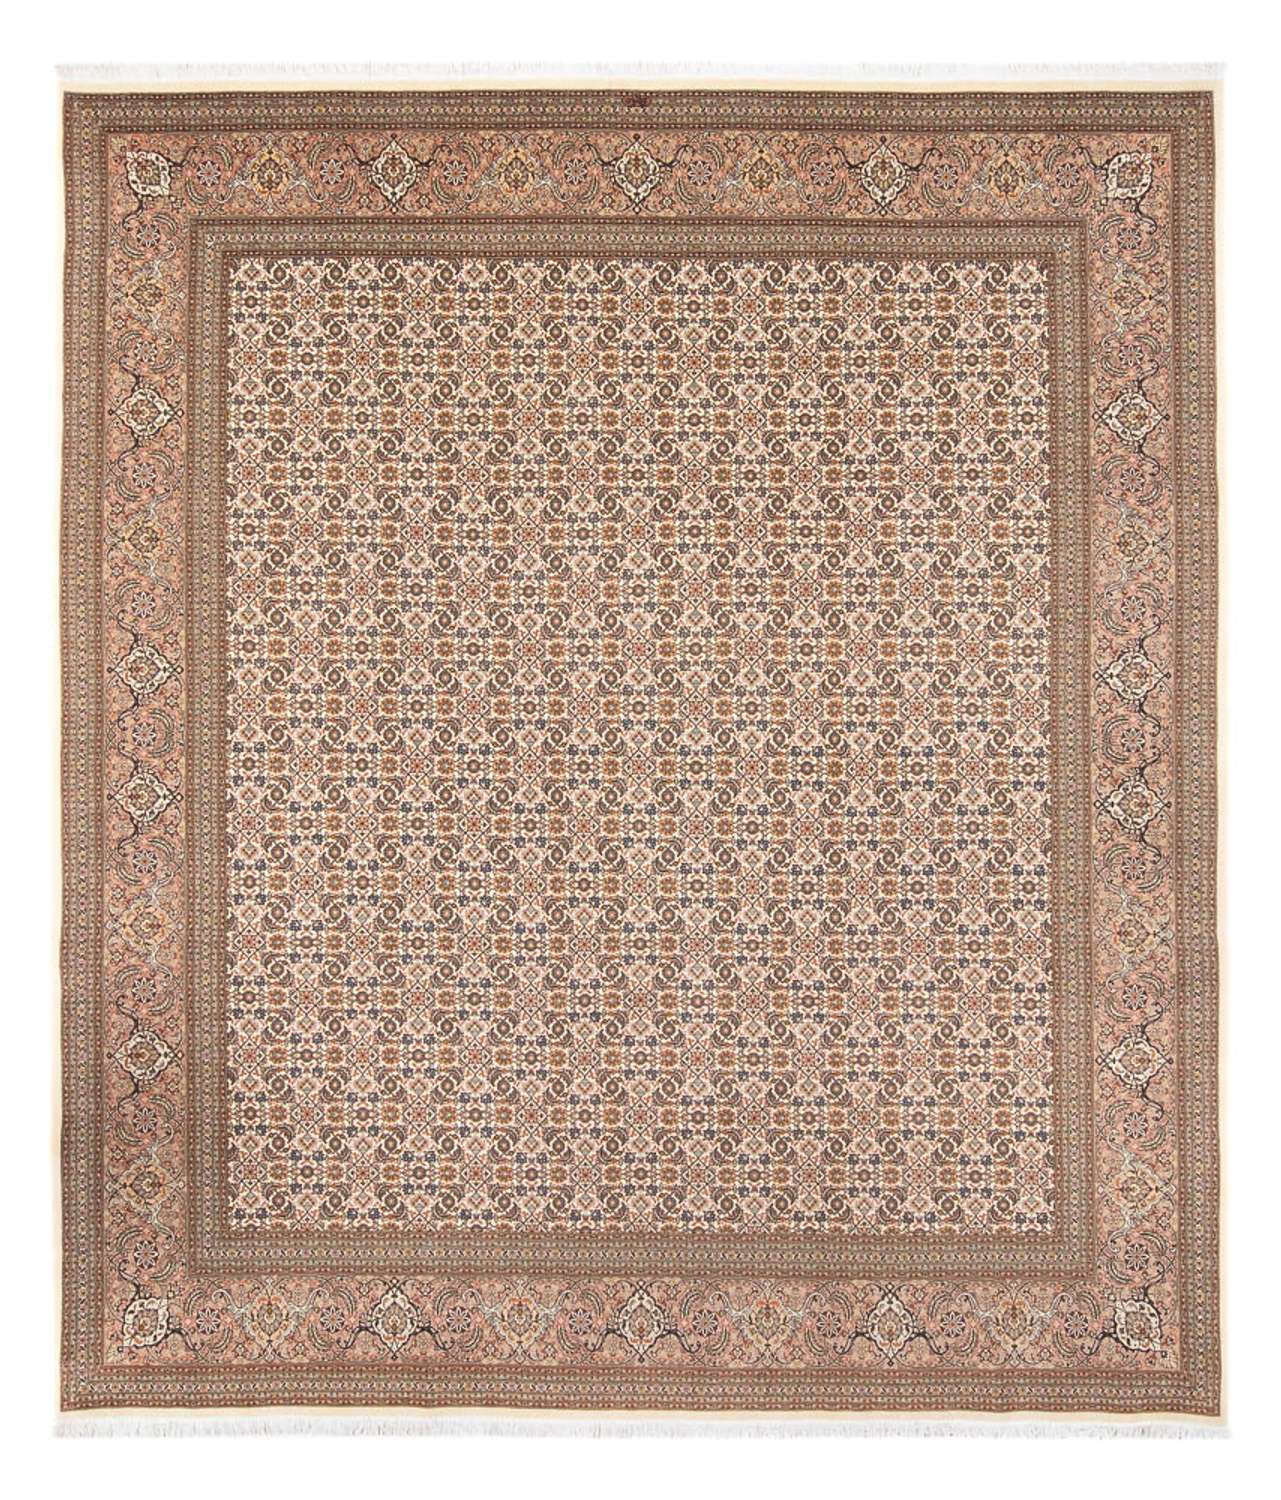 Tapis persan - Tabriz - Royal - 290 x 253 cm - beige foncé